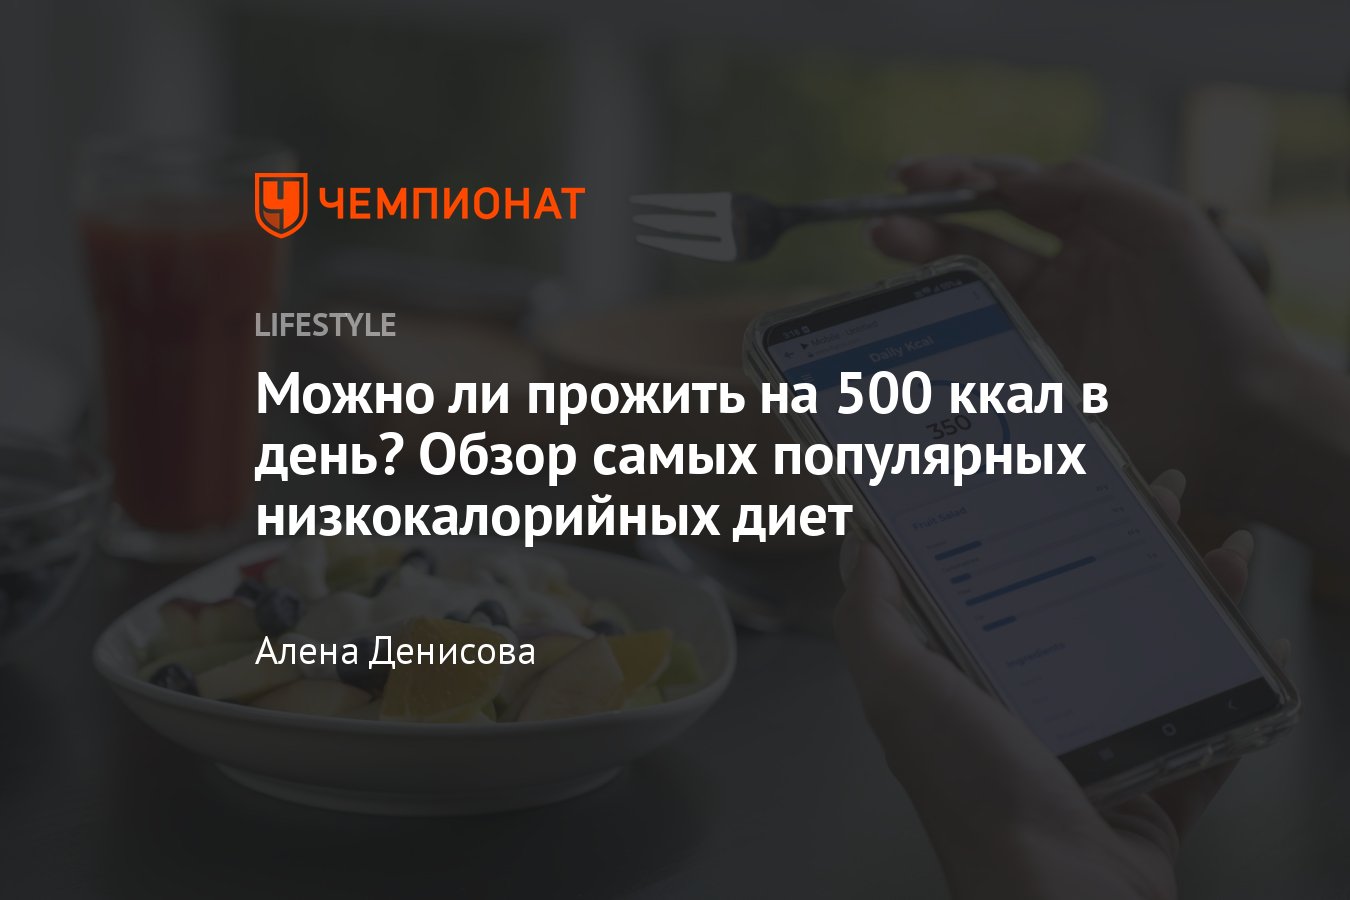 Calorizator.ru - Анализируй то, что ты ешь!